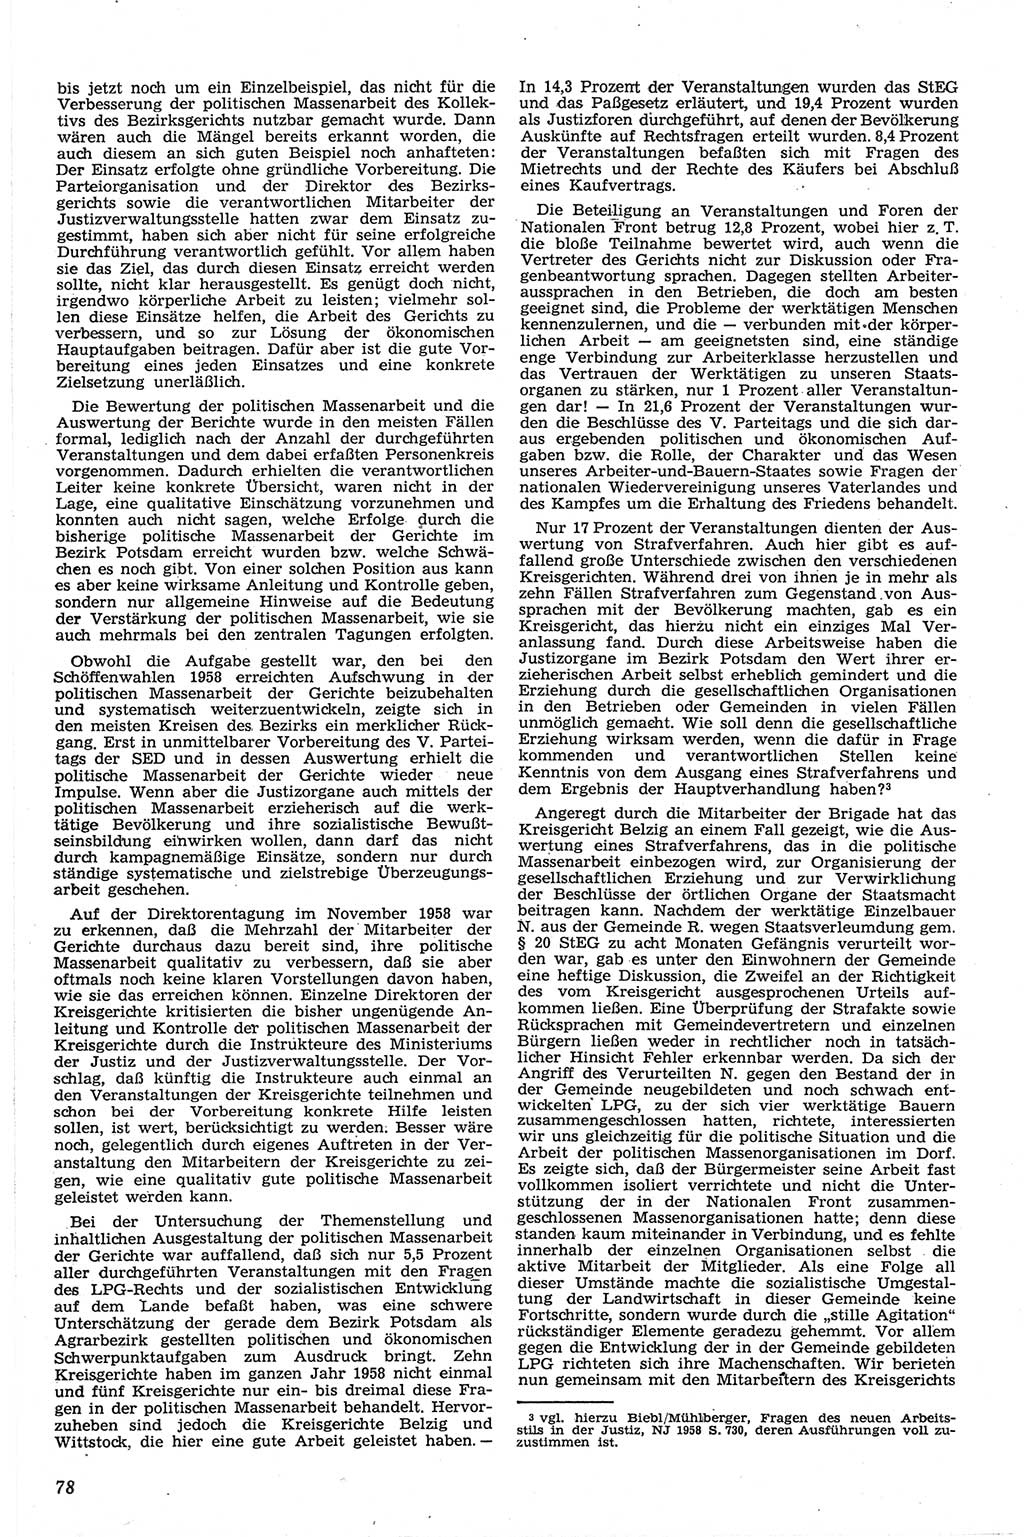 Neue Justiz (NJ), Zeitschrift für Recht und Rechtswissenschaft [Deutsche Demokratische Republik (DDR)], 13. Jahrgang 1959, Seite 78 (NJ DDR 1959, S. 78)